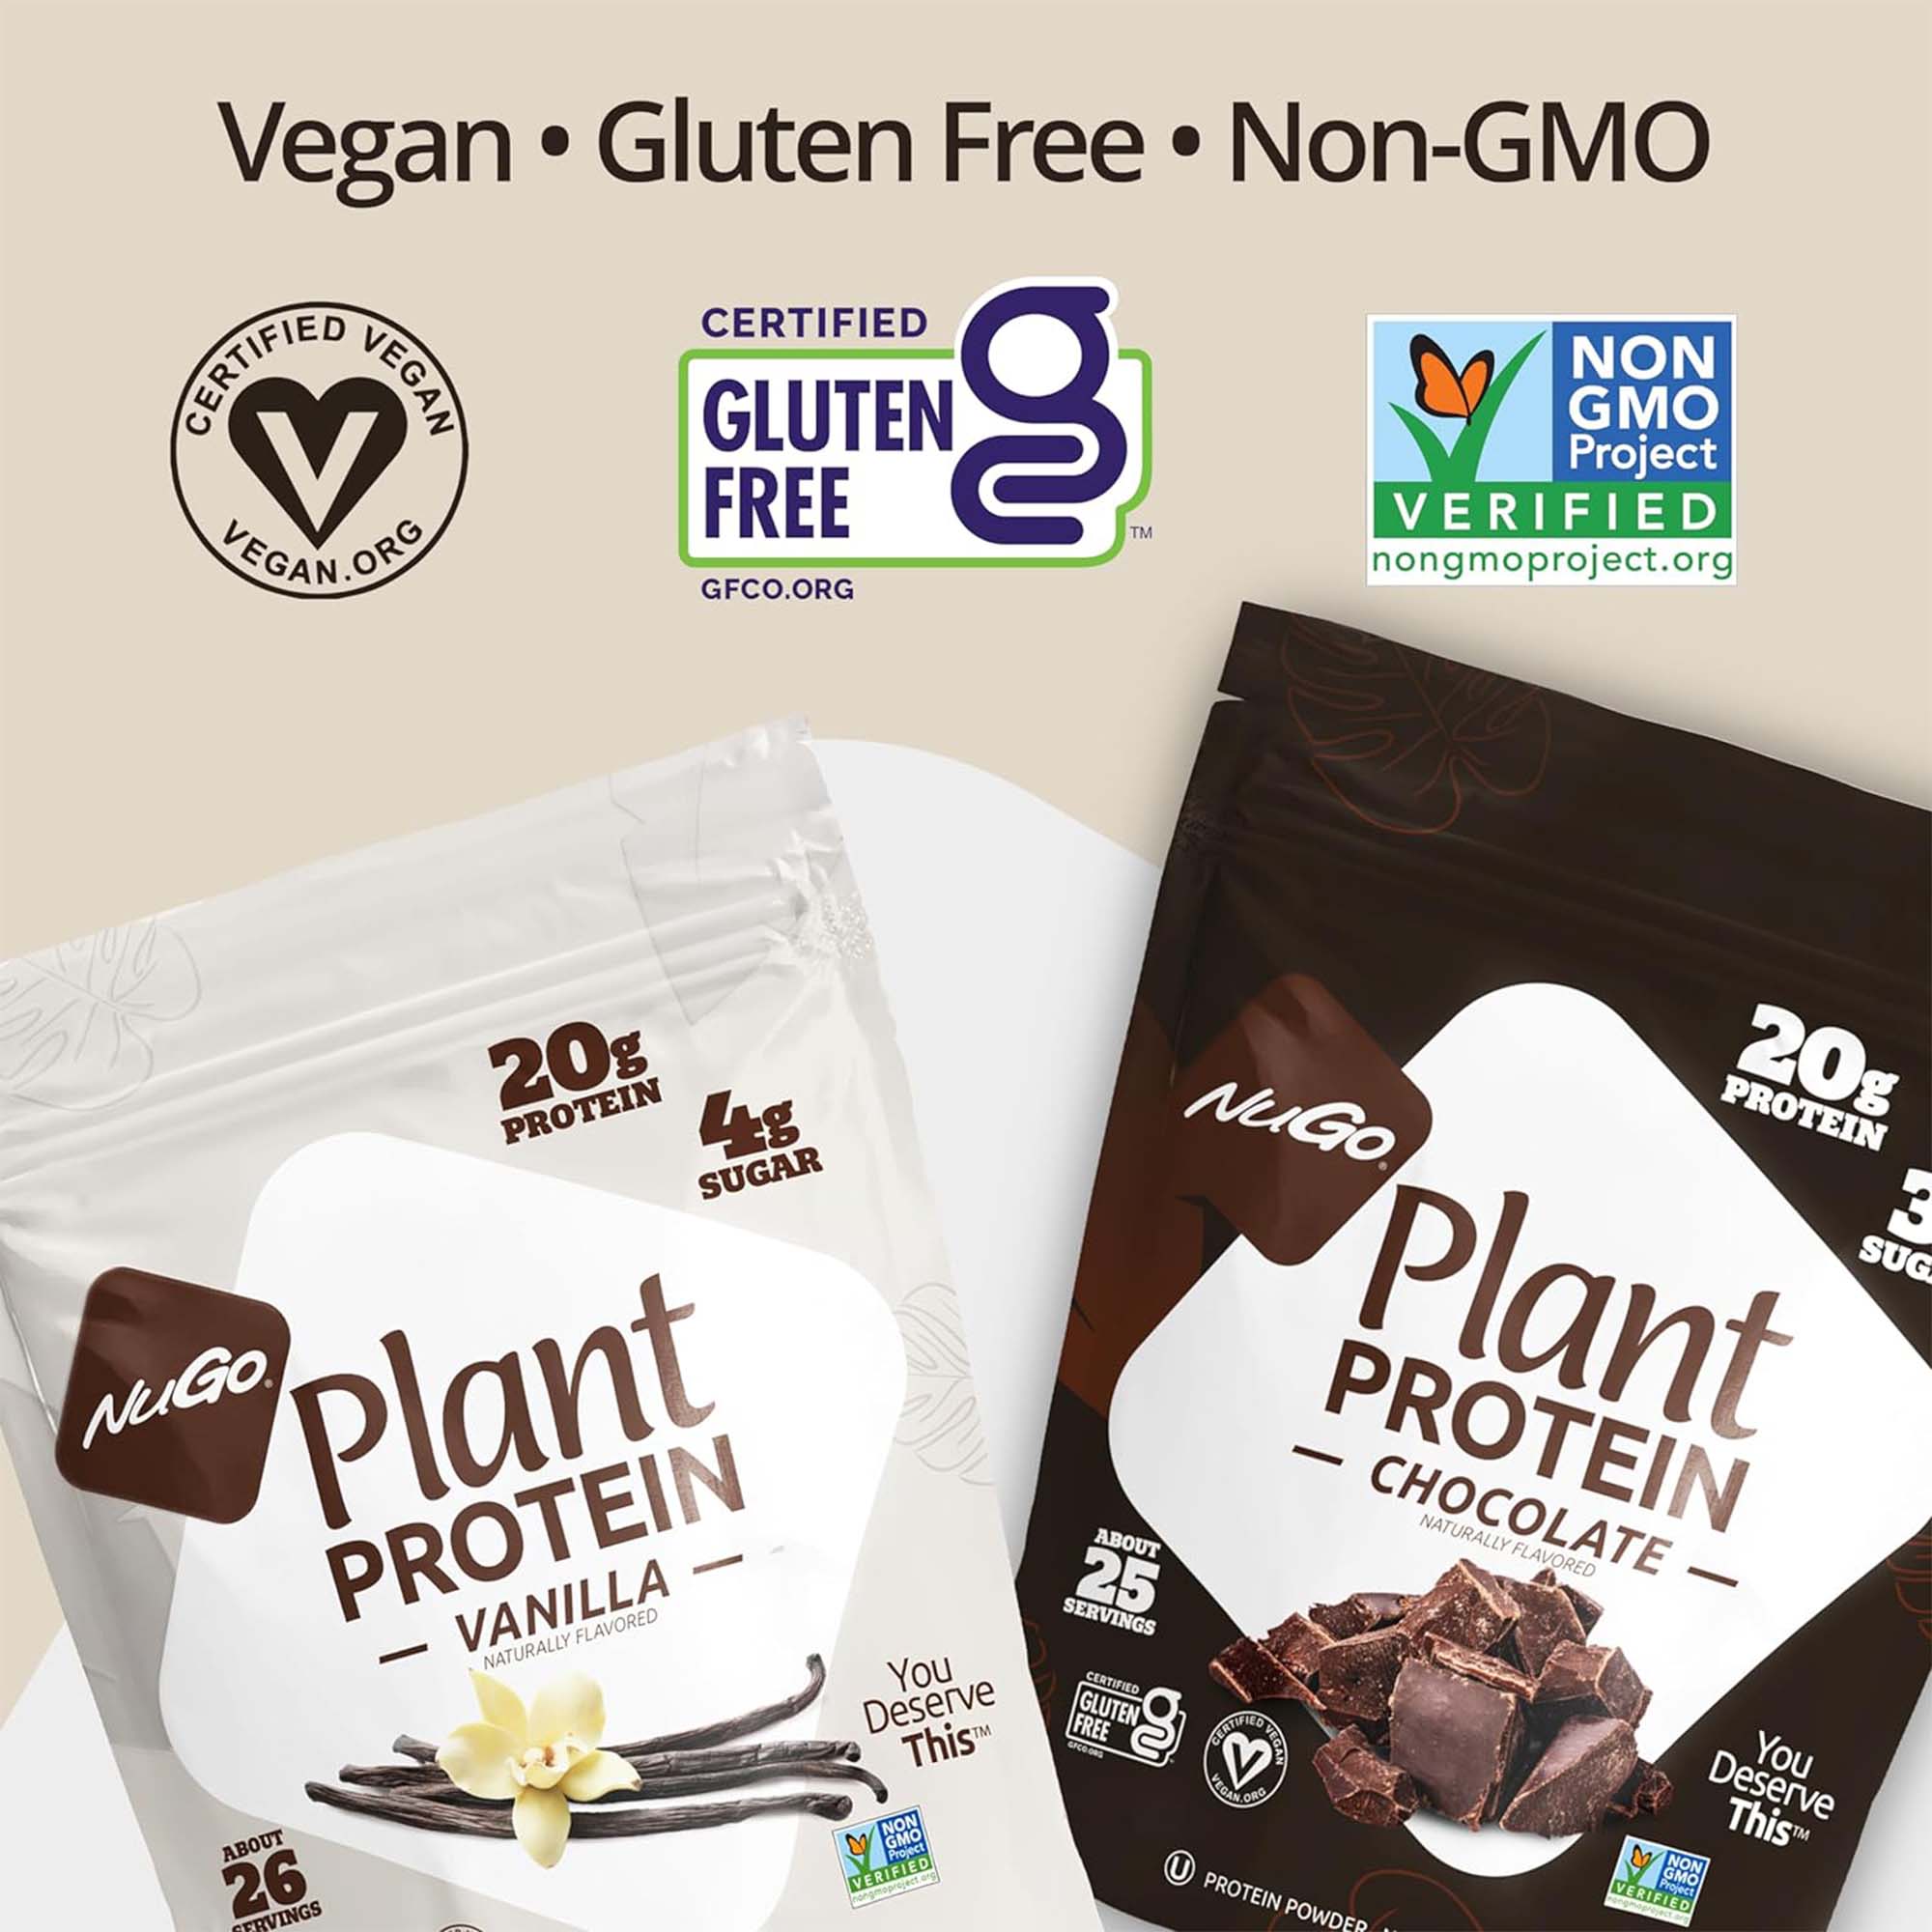 Vegan, Gluten Free, Non-GMO Text Image